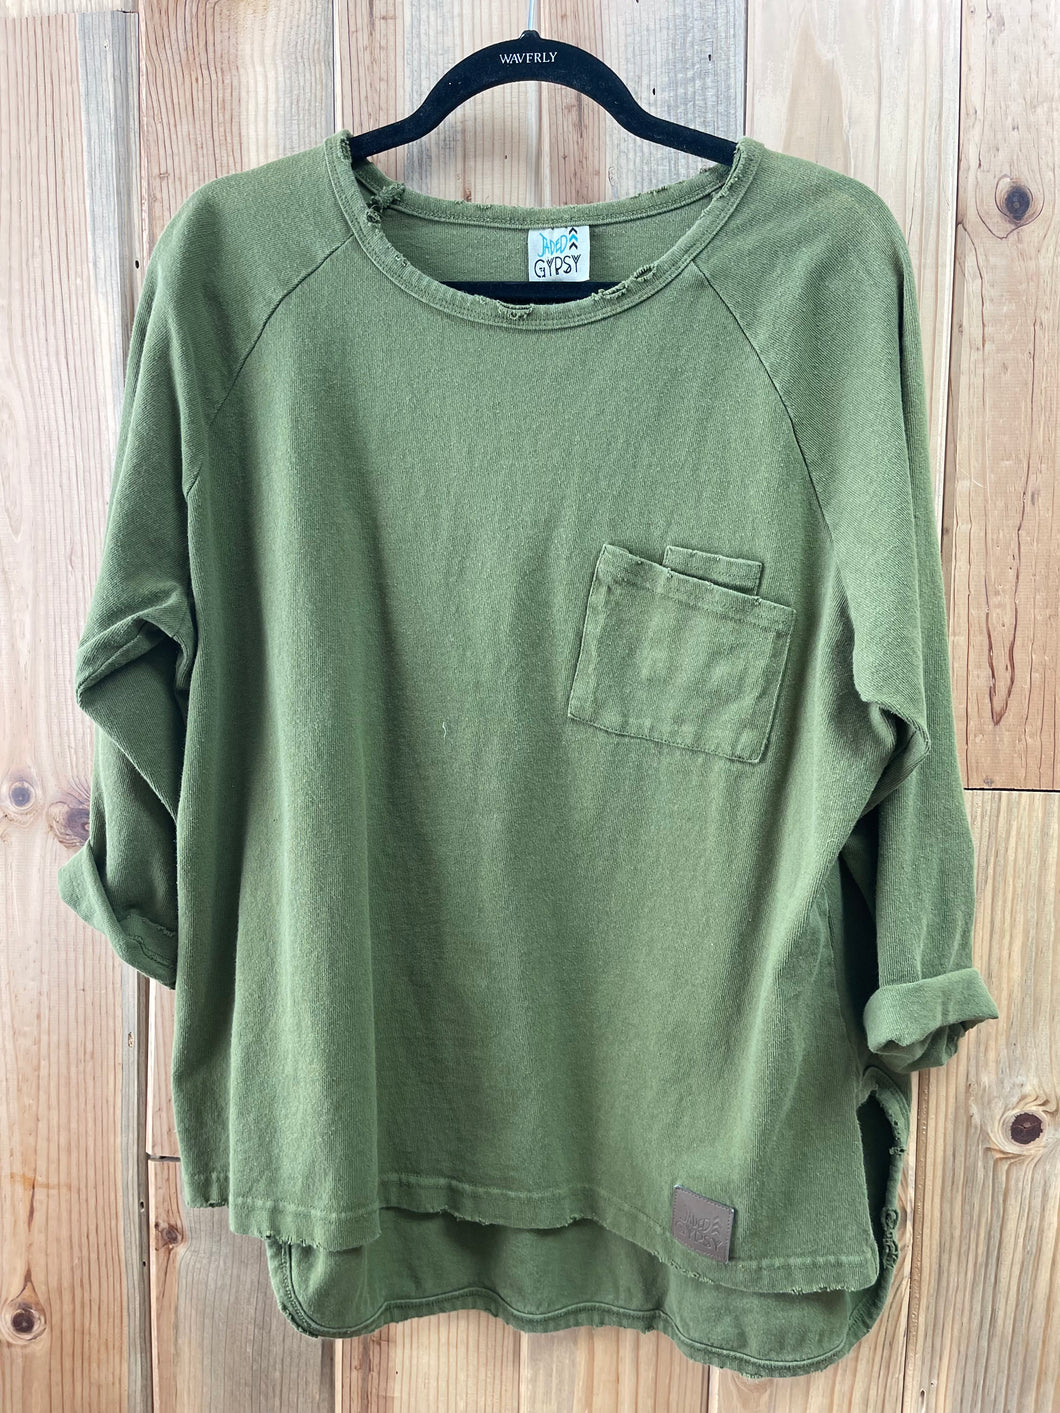 Just Green - Jaded Gypsy Sweatshirt